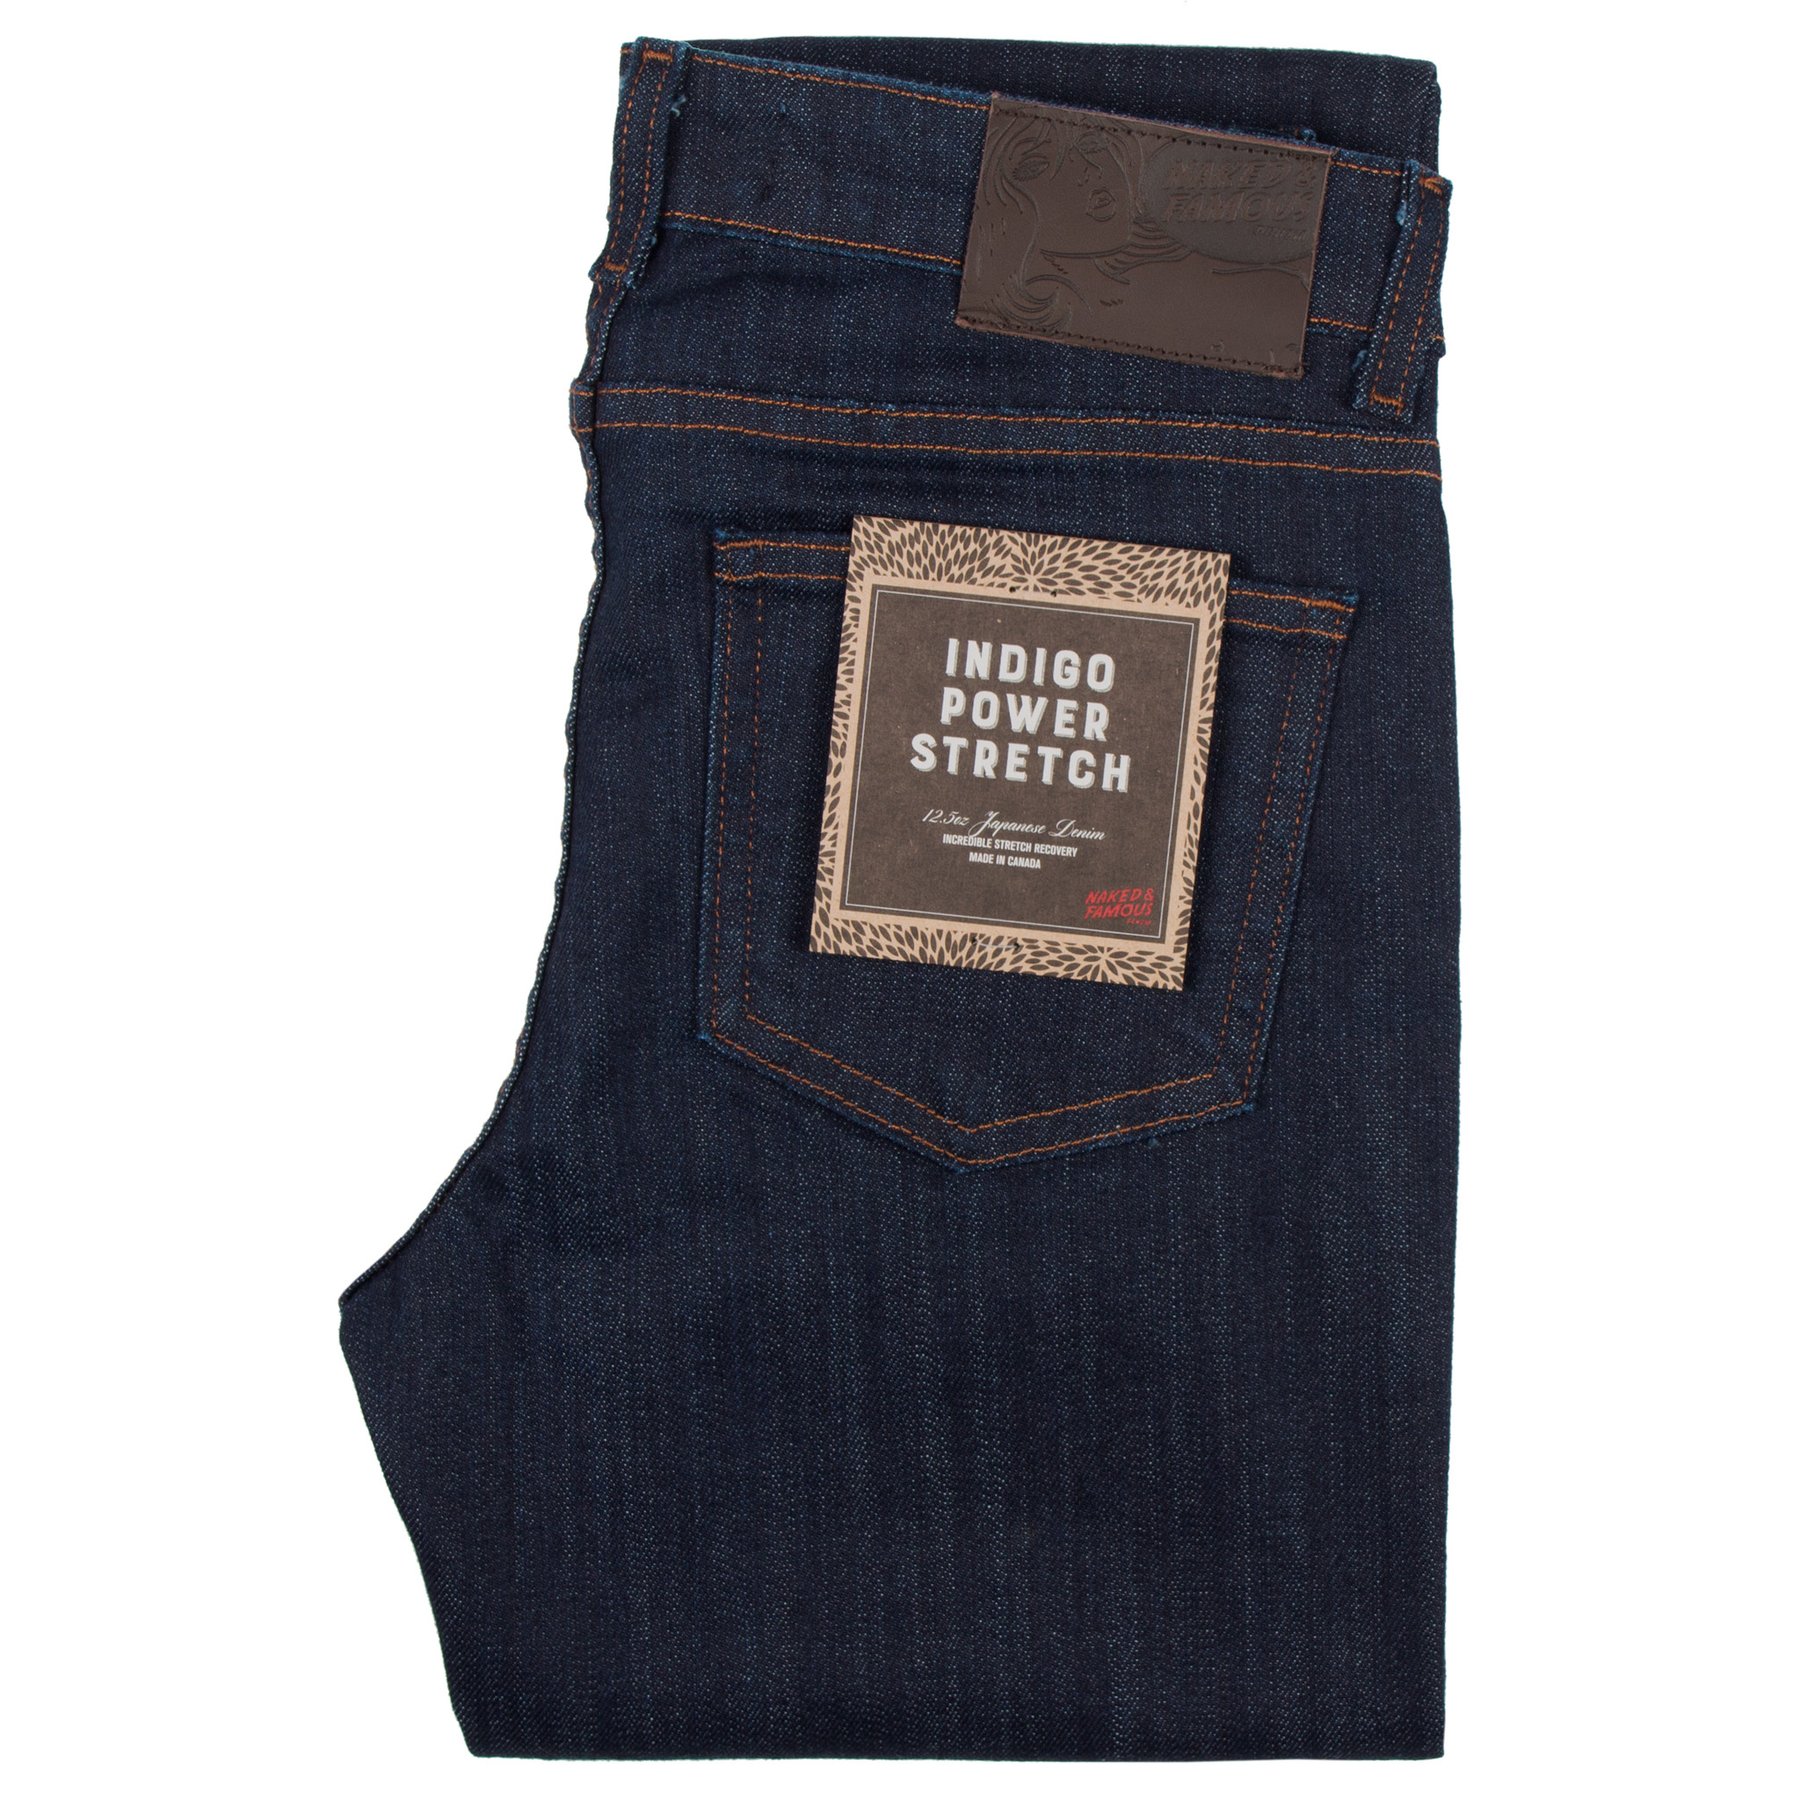  Women’s Indigo Power-Stretch jeans Folded View 